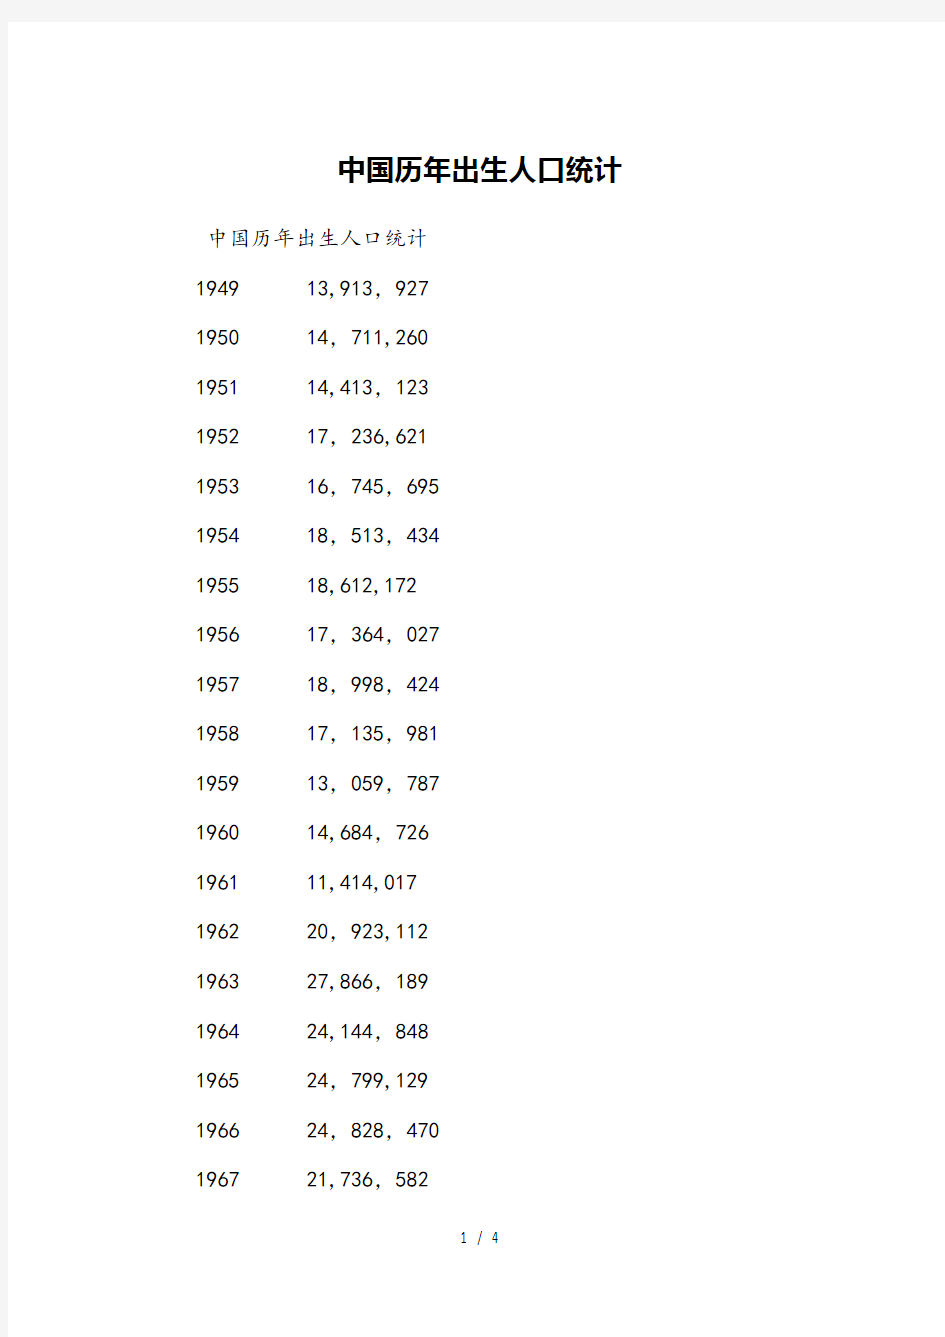 中国历年出生人口统计